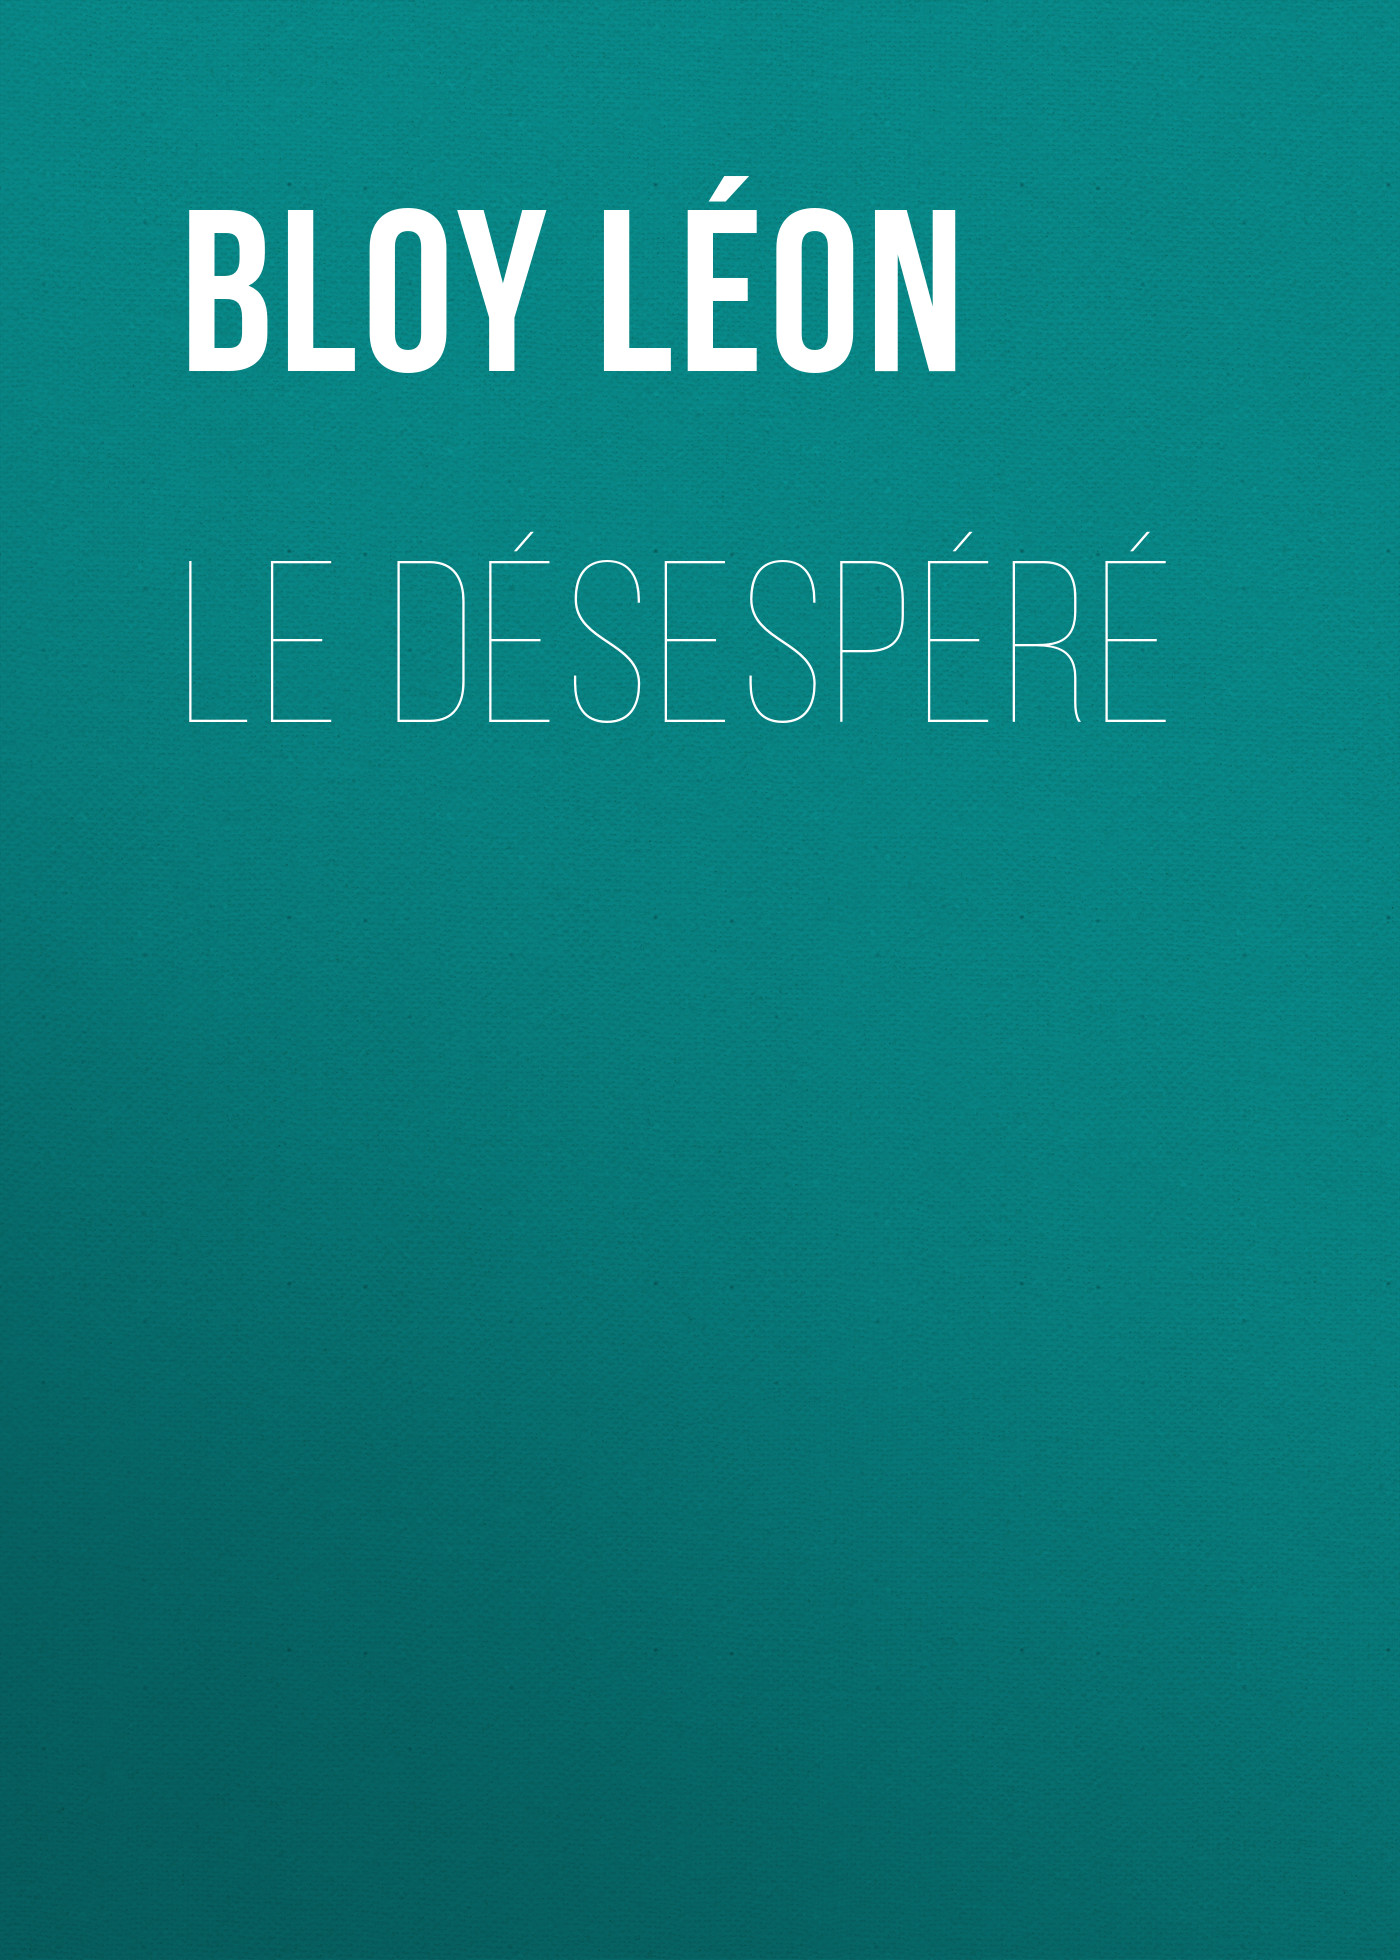 Книга Le Désespéré из серии , созданная Léon Bloy, может относится к жанру Зарубежная старинная литература, Зарубежная классика. Стоимость электронной книги Le Désespéré с идентификатором 24178996 составляет 0.90 руб.